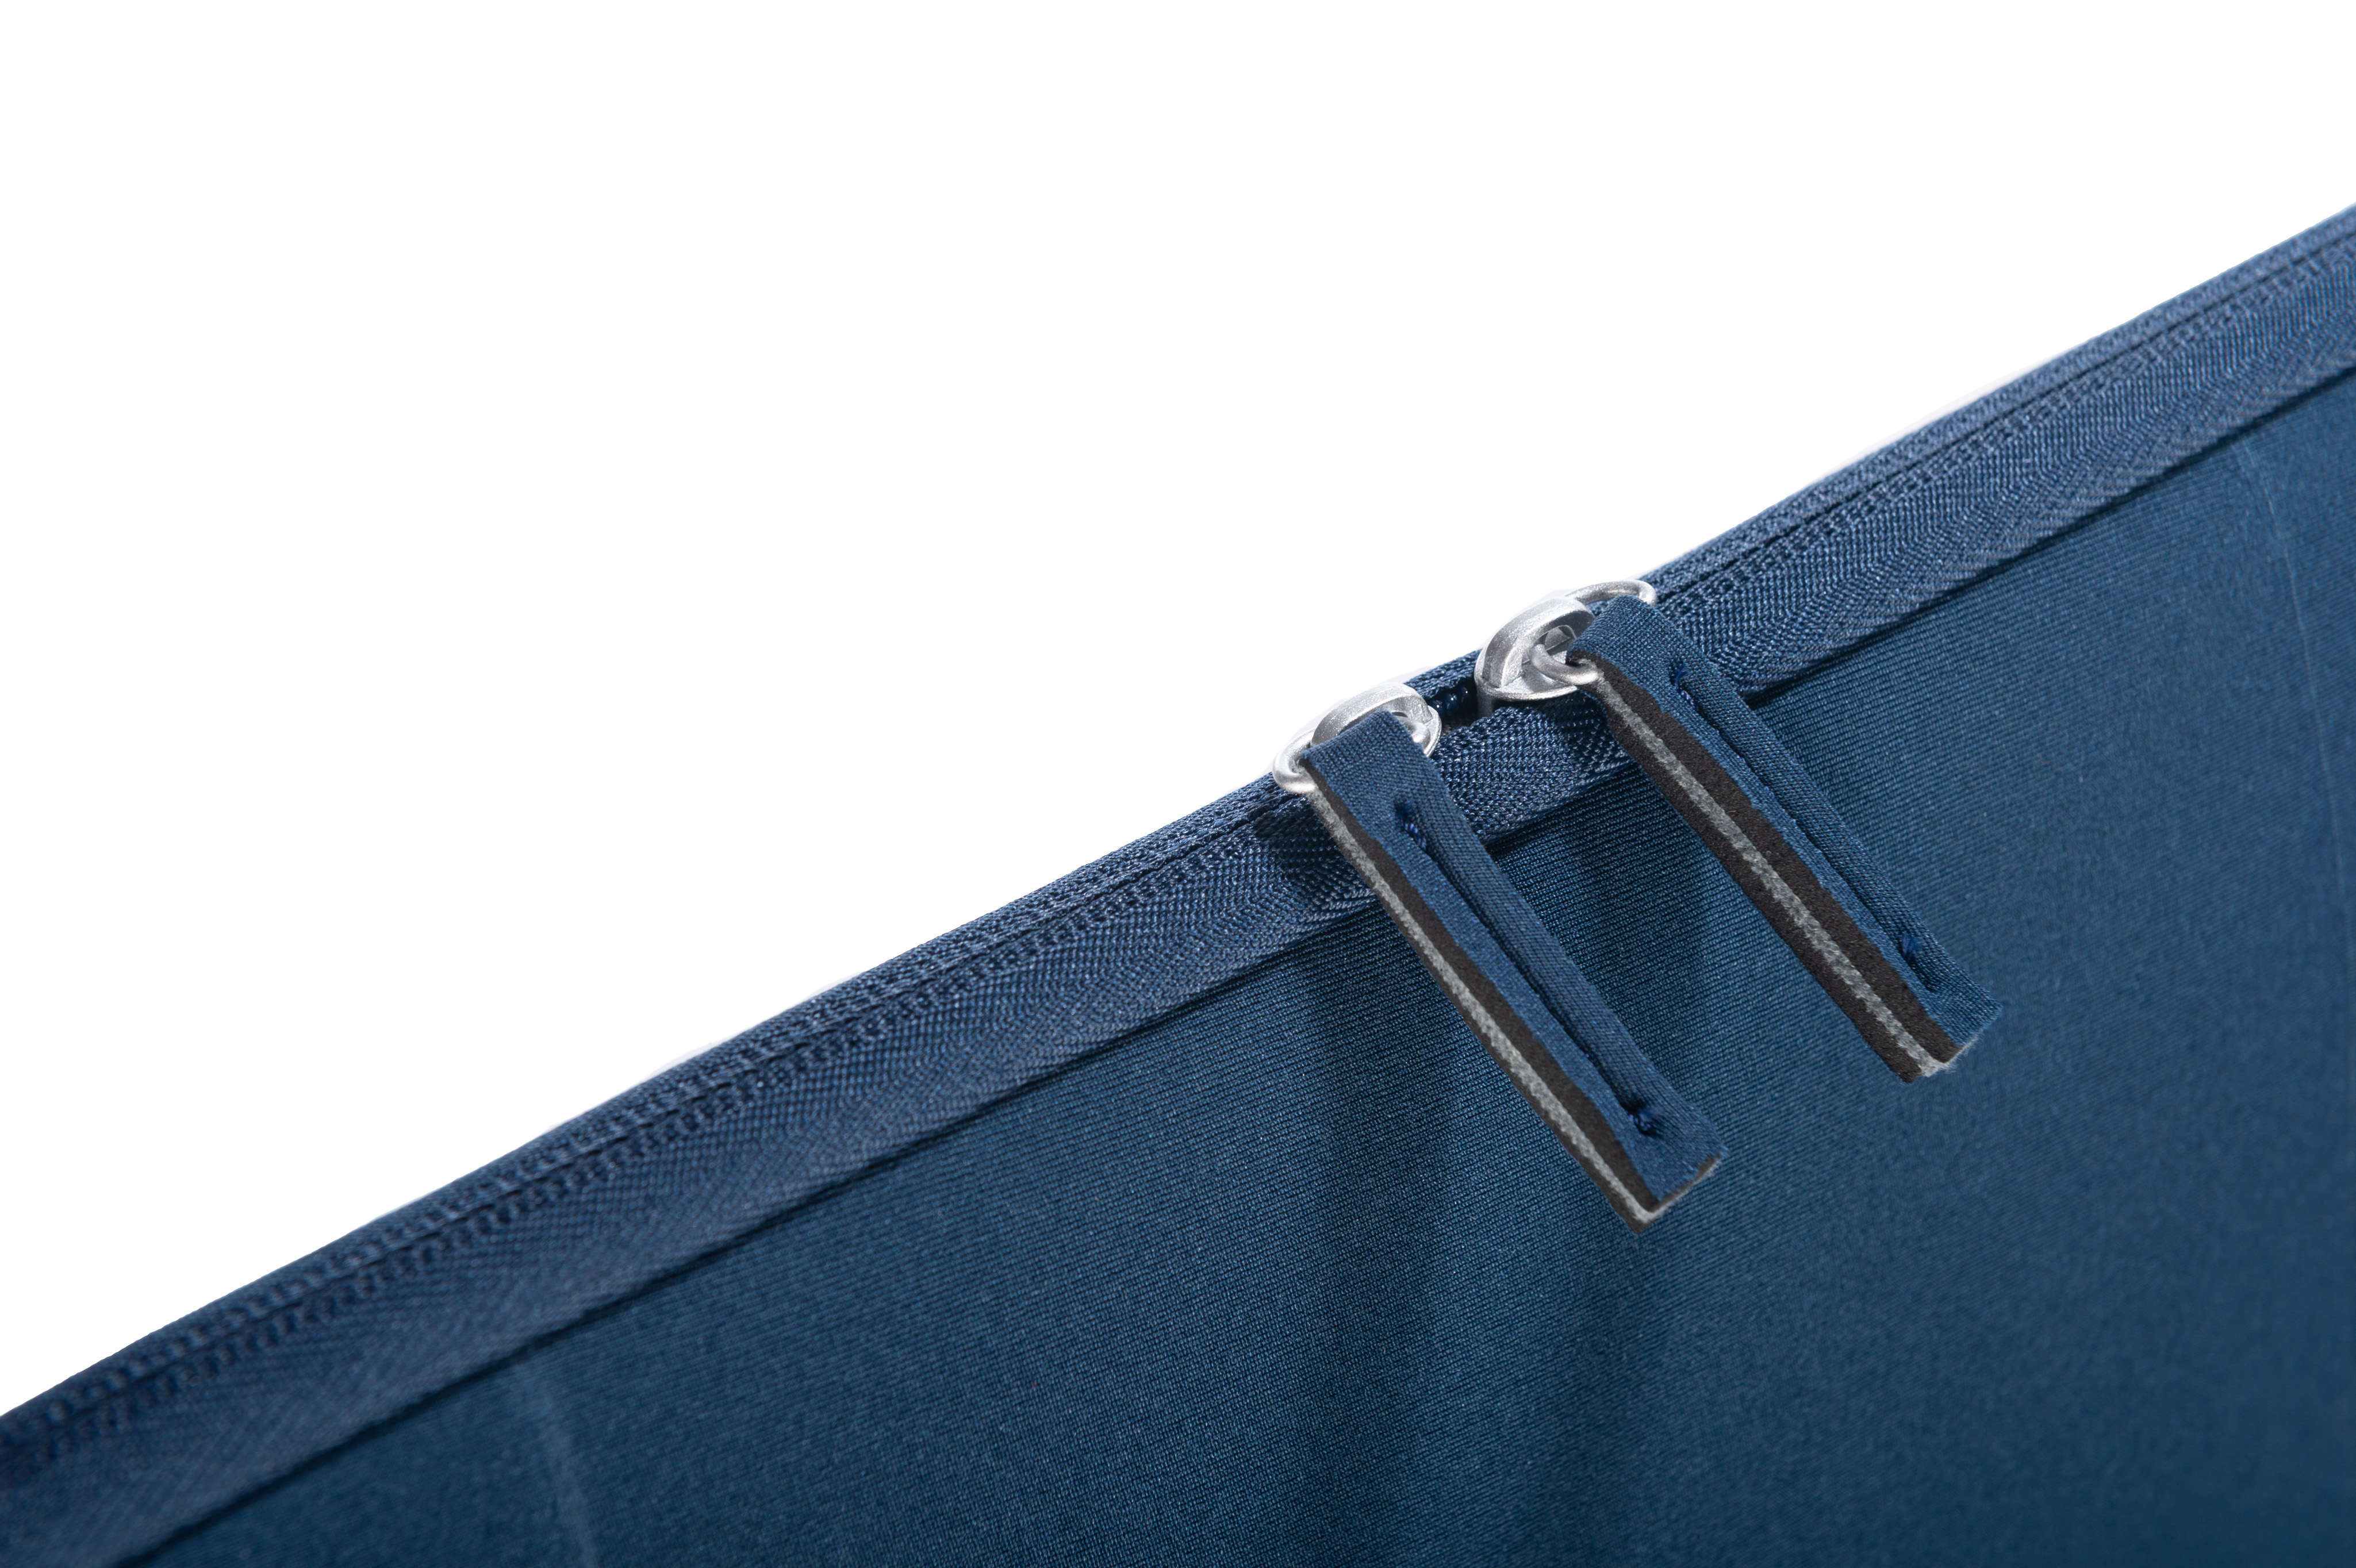 ISY INB-1560 100% Universal Sleeve Polyester, für Blau Notebooktasche